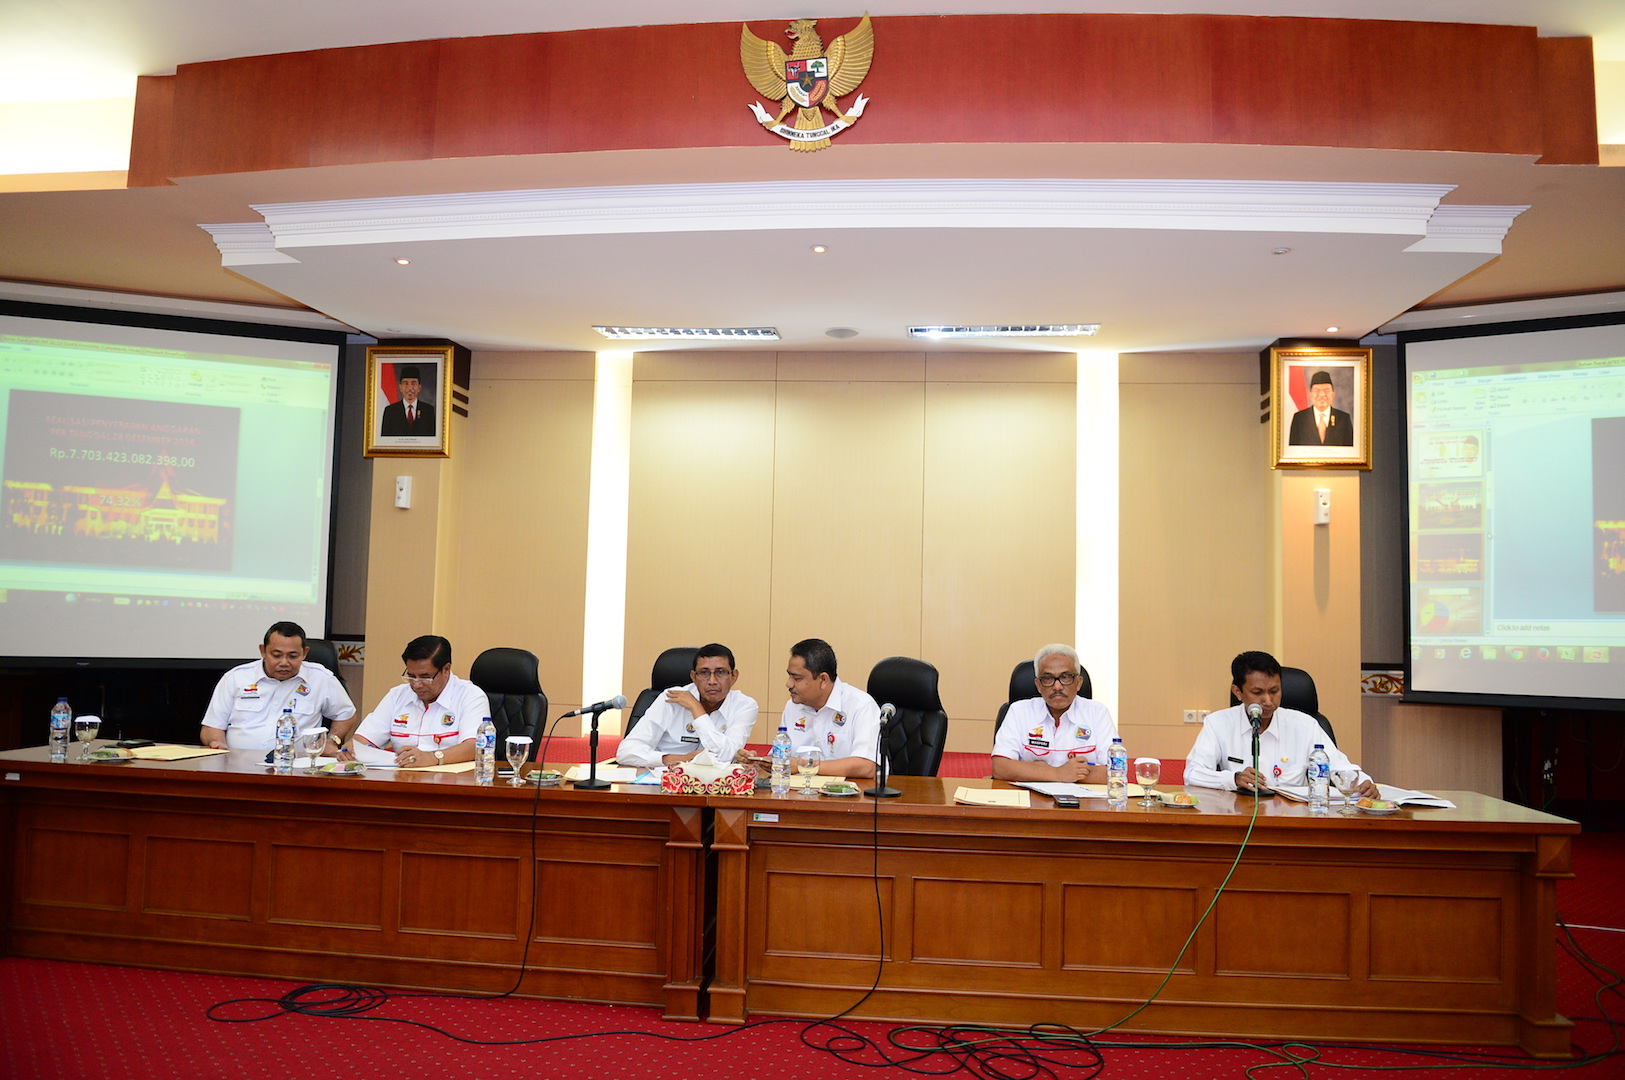 Sekda Prov Riau Pimpin Rapat Realisasi Fisik dan Keuangan Pemprov Riau T.A 2016 di Ruang Melati Kantor Gubernur